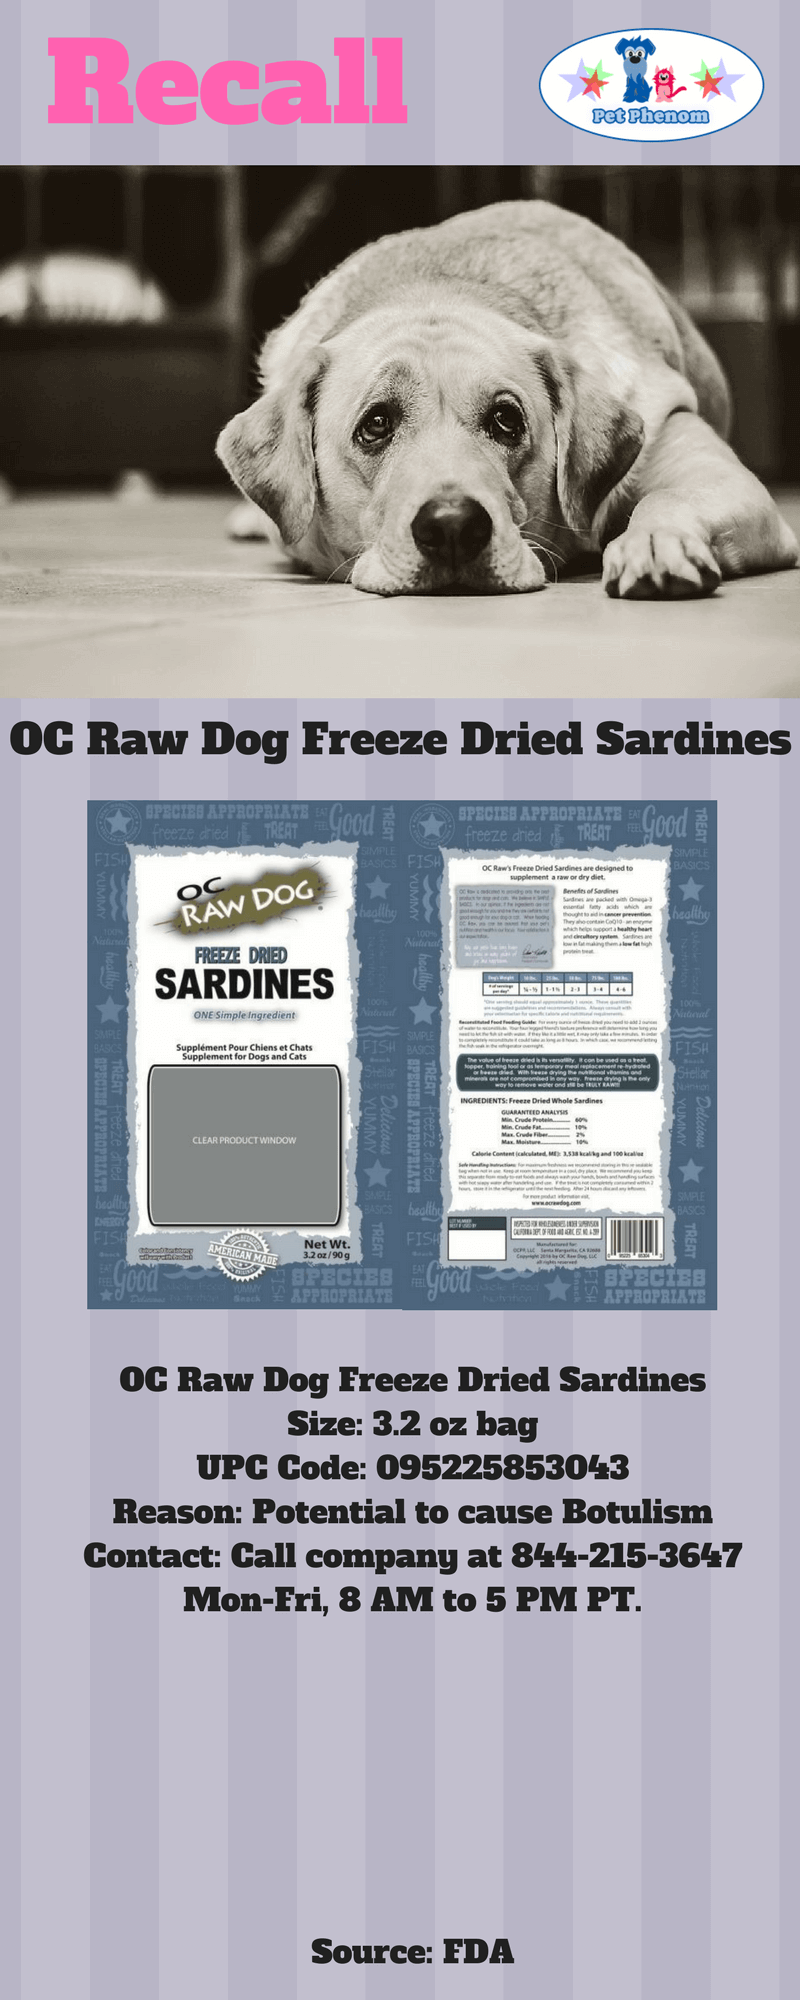 OC Raw Dog Freeze Dried Sardines